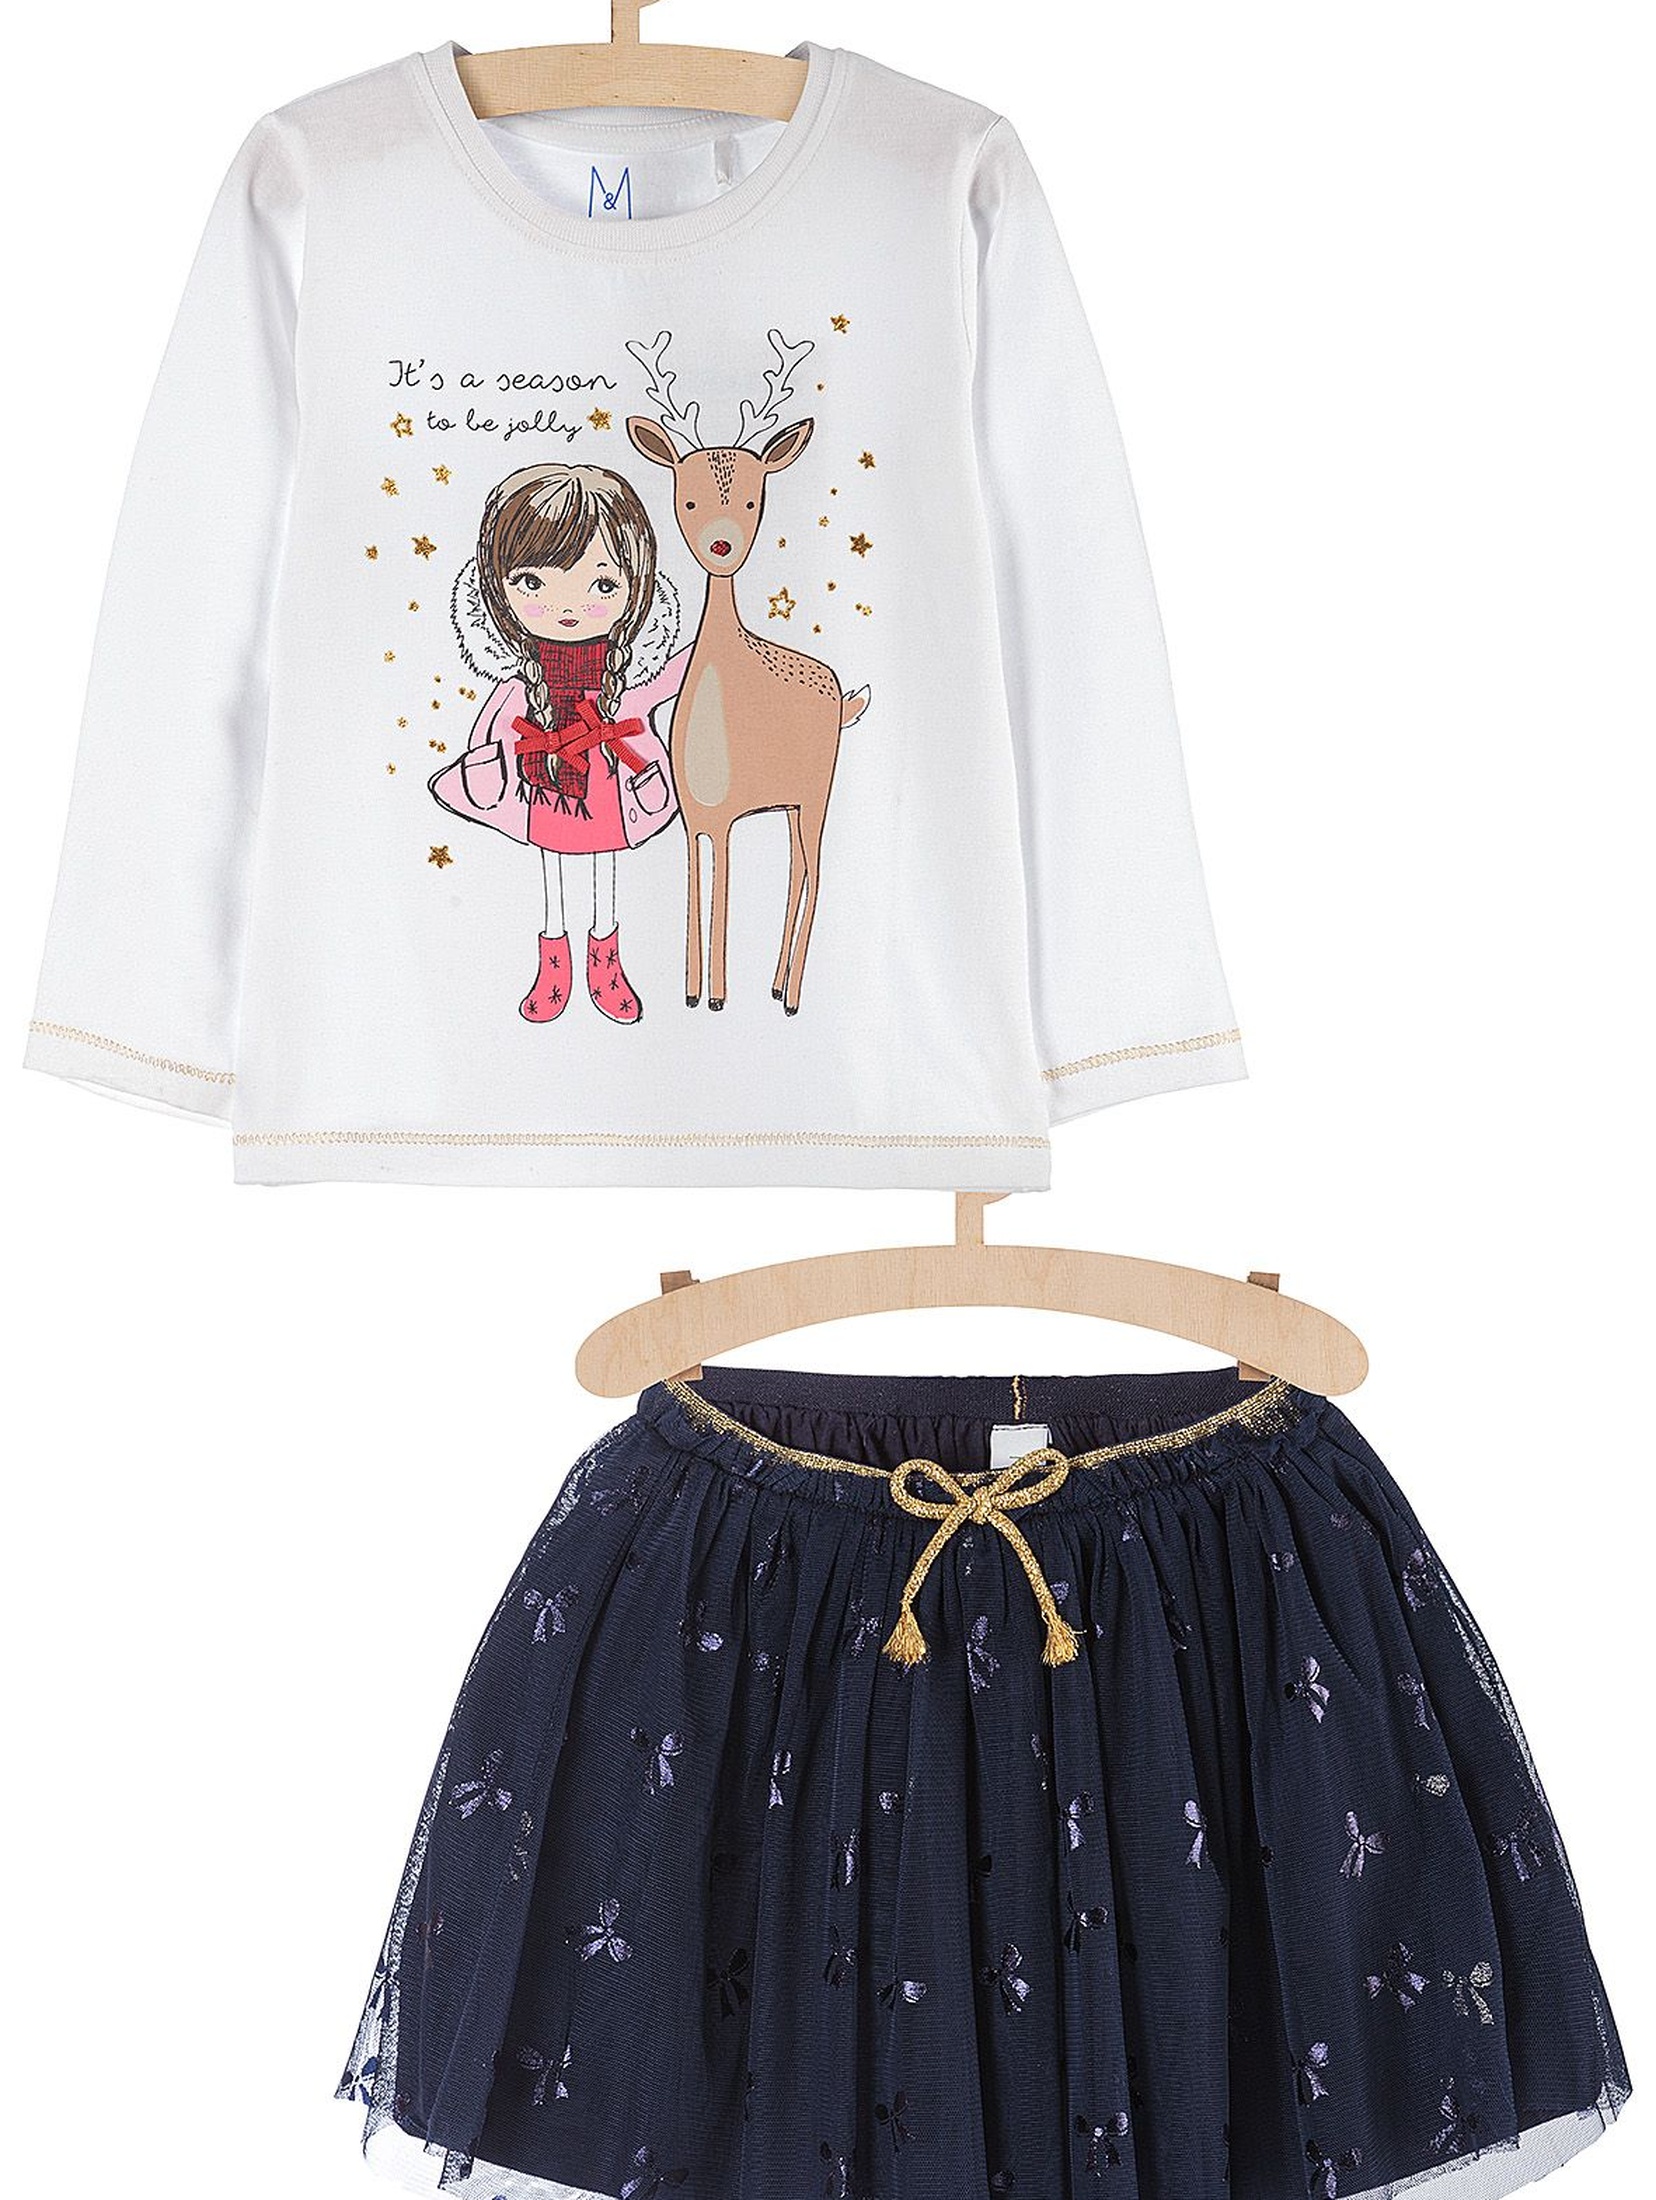 Tiulowa spódniczka i bluzka dla dziewczynki- komplet ubrań z motywem świątecznym